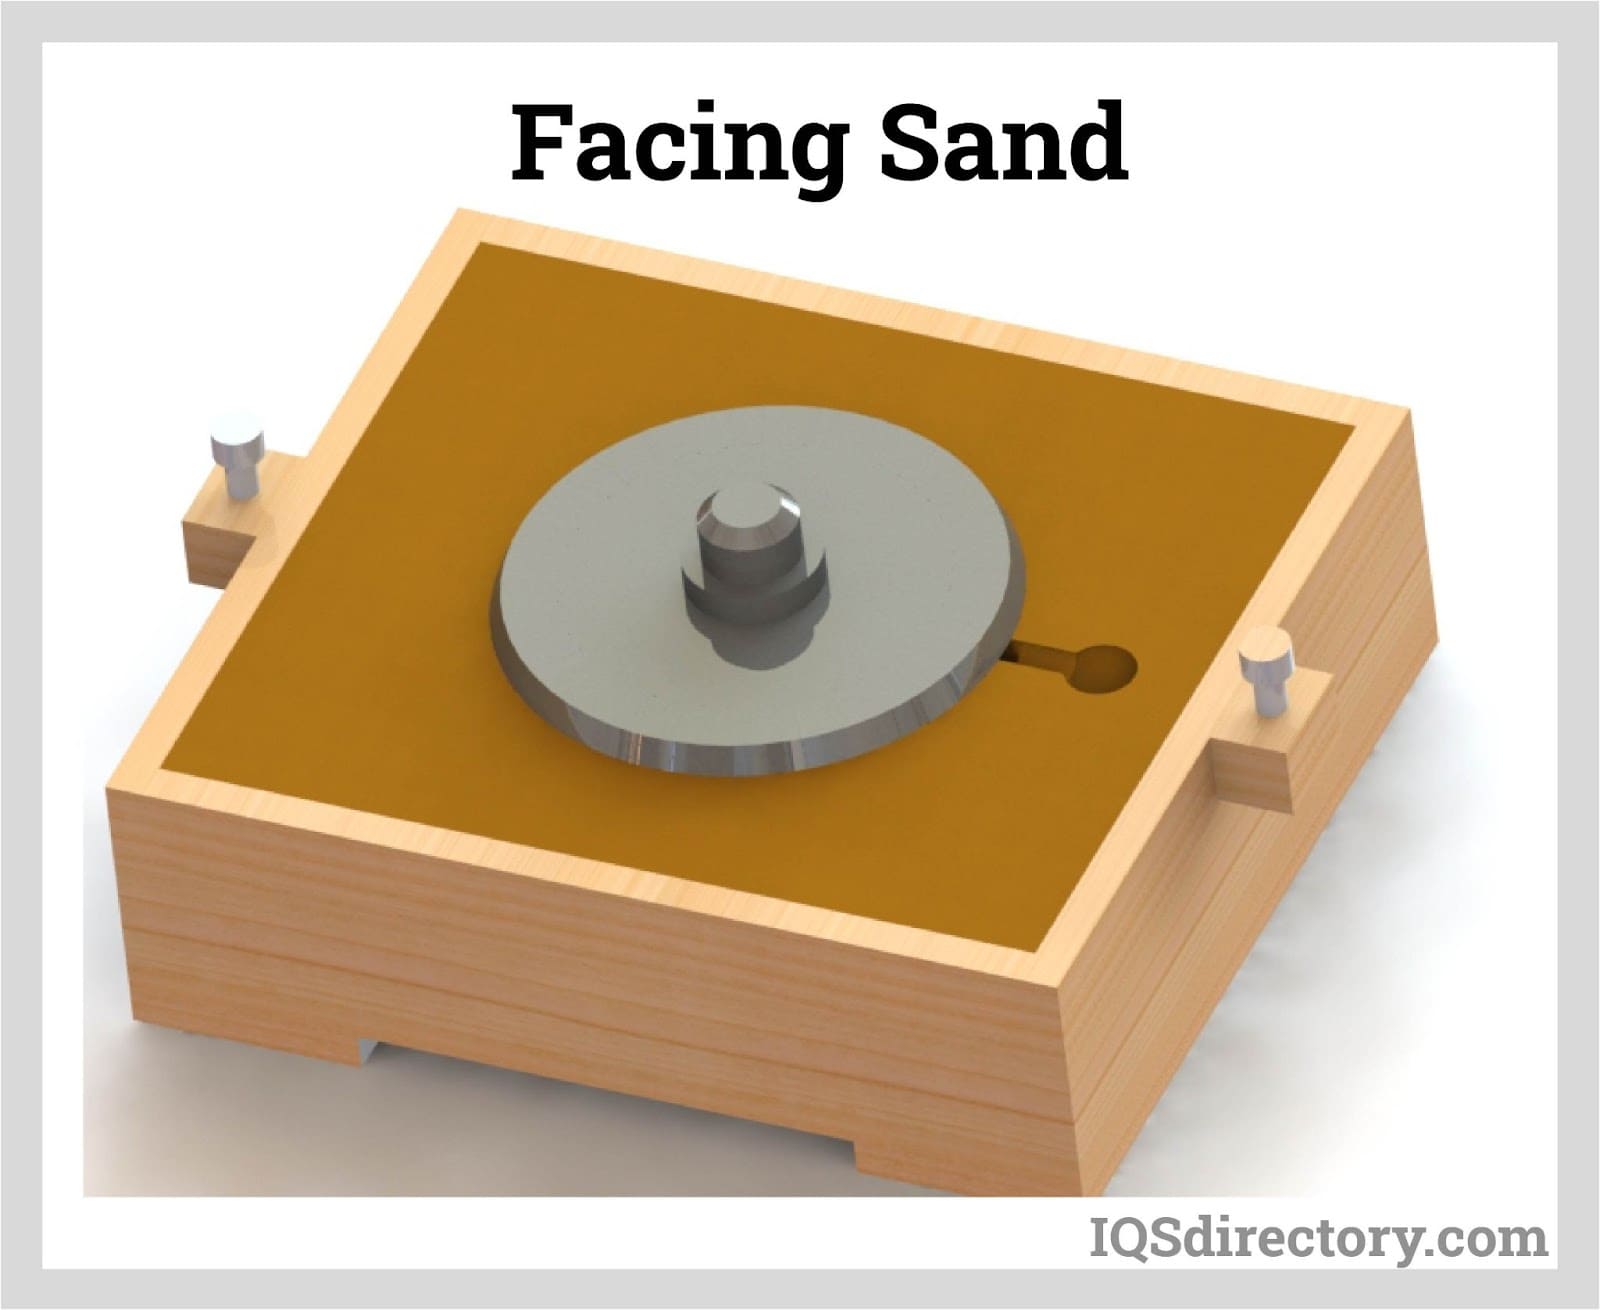 Facing Sand